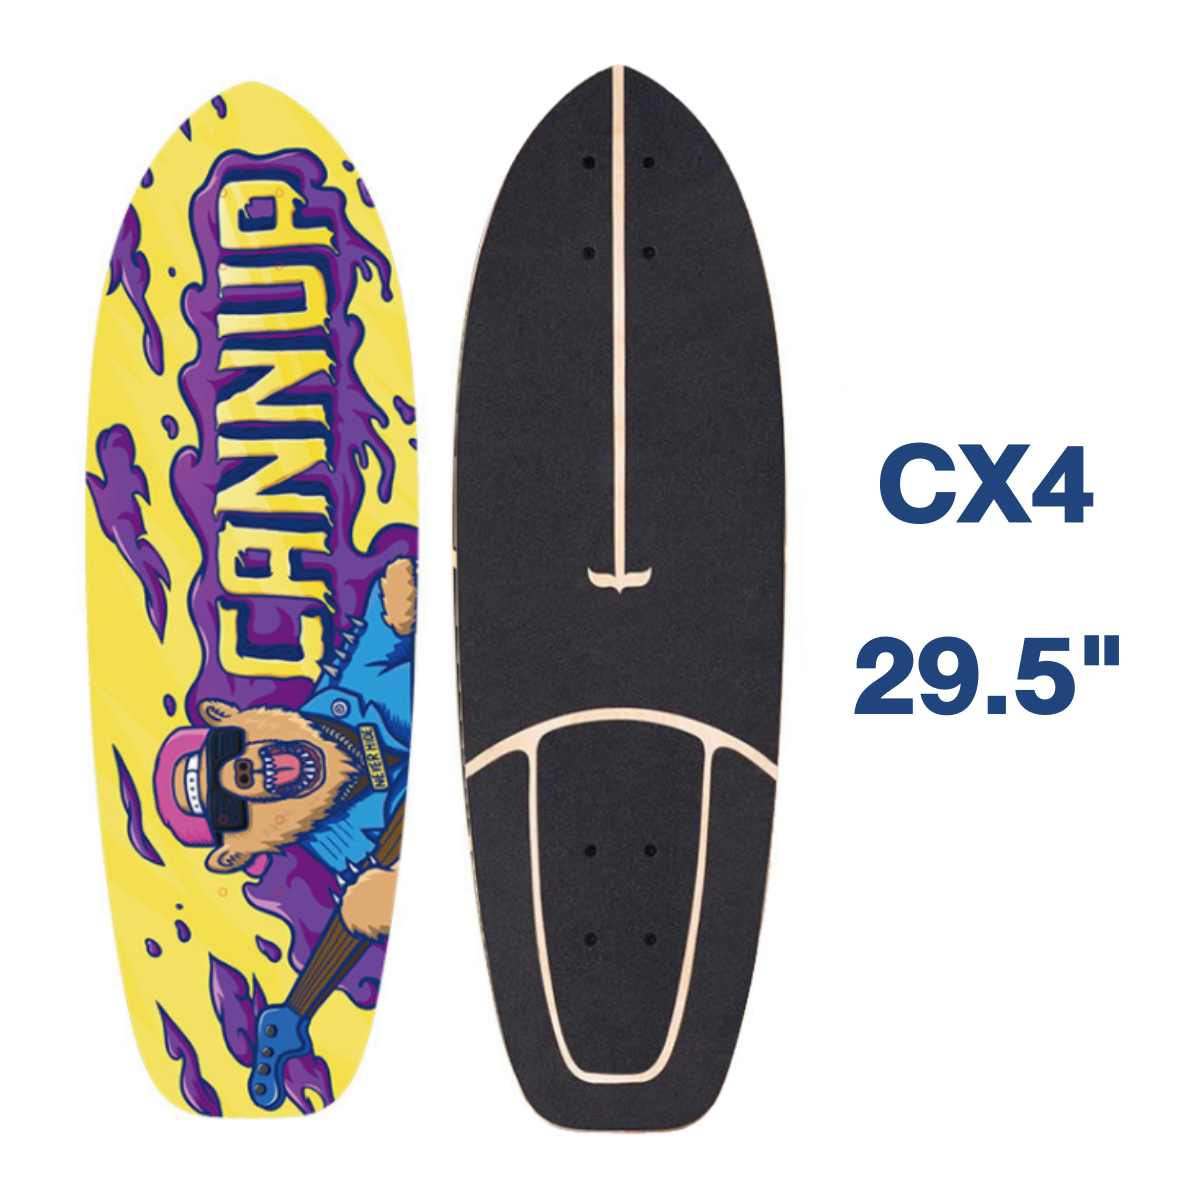 พร้อมส่ง! SWAY Surfskate เซิร์ฟสเก็ต CX4 CX7 S7 Adapter ขนาด 29" ของแท้ สเก็ตบอร์ด Skateboard